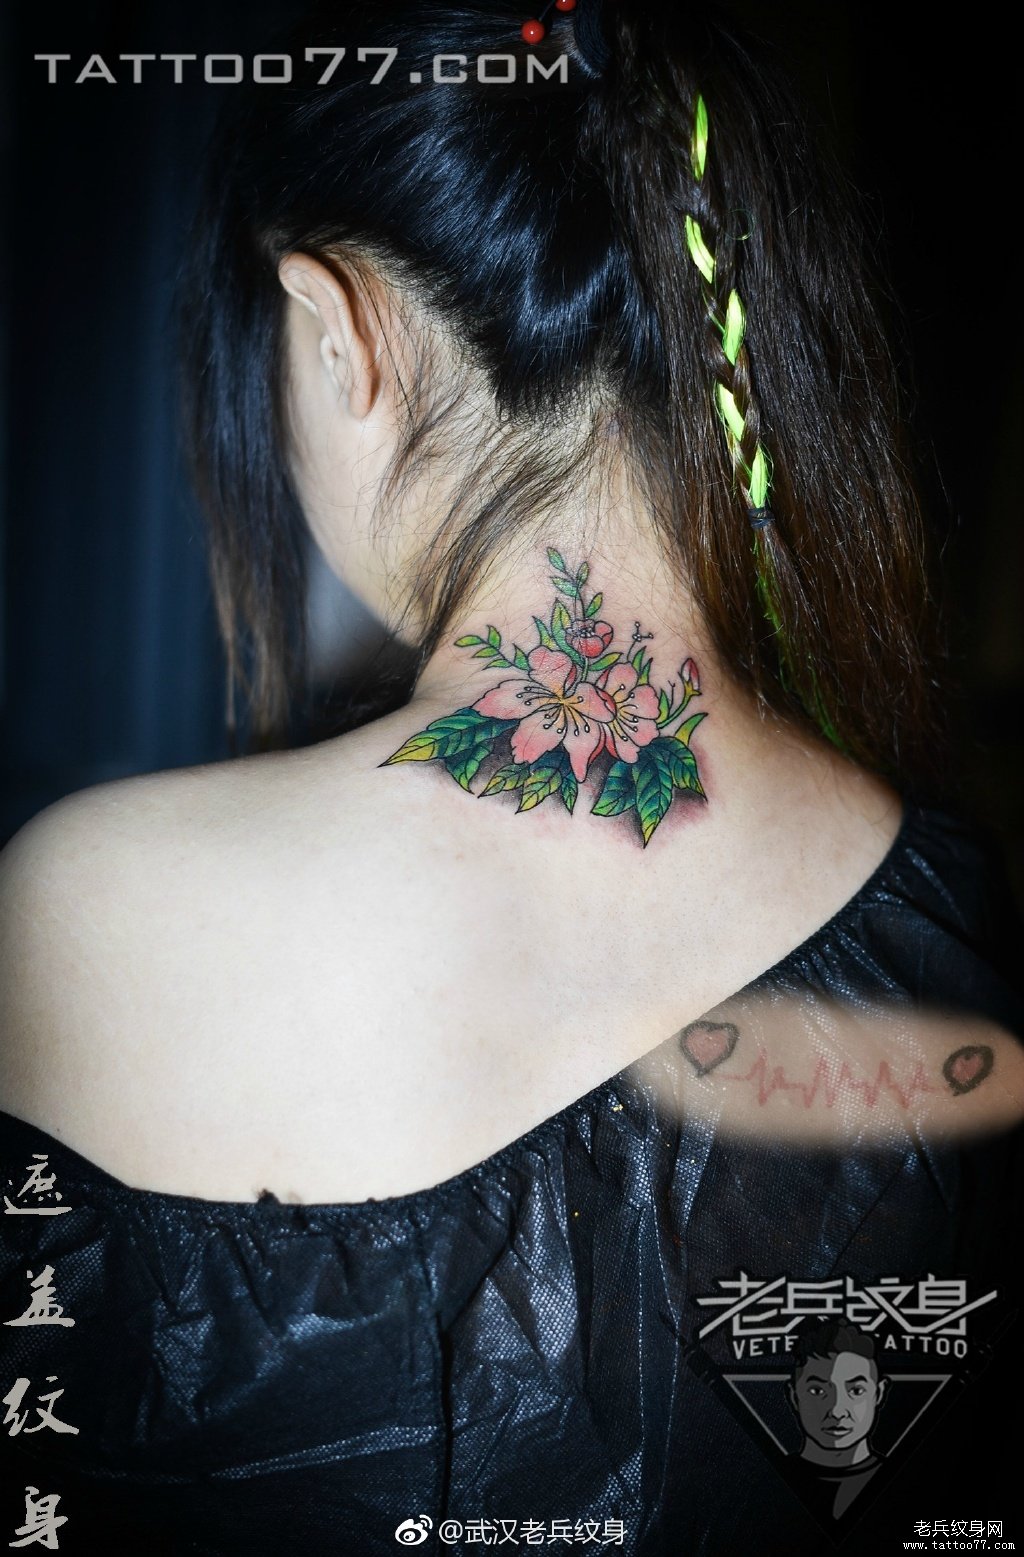 脖子花卉纹身图案作品遮盖旧纹身